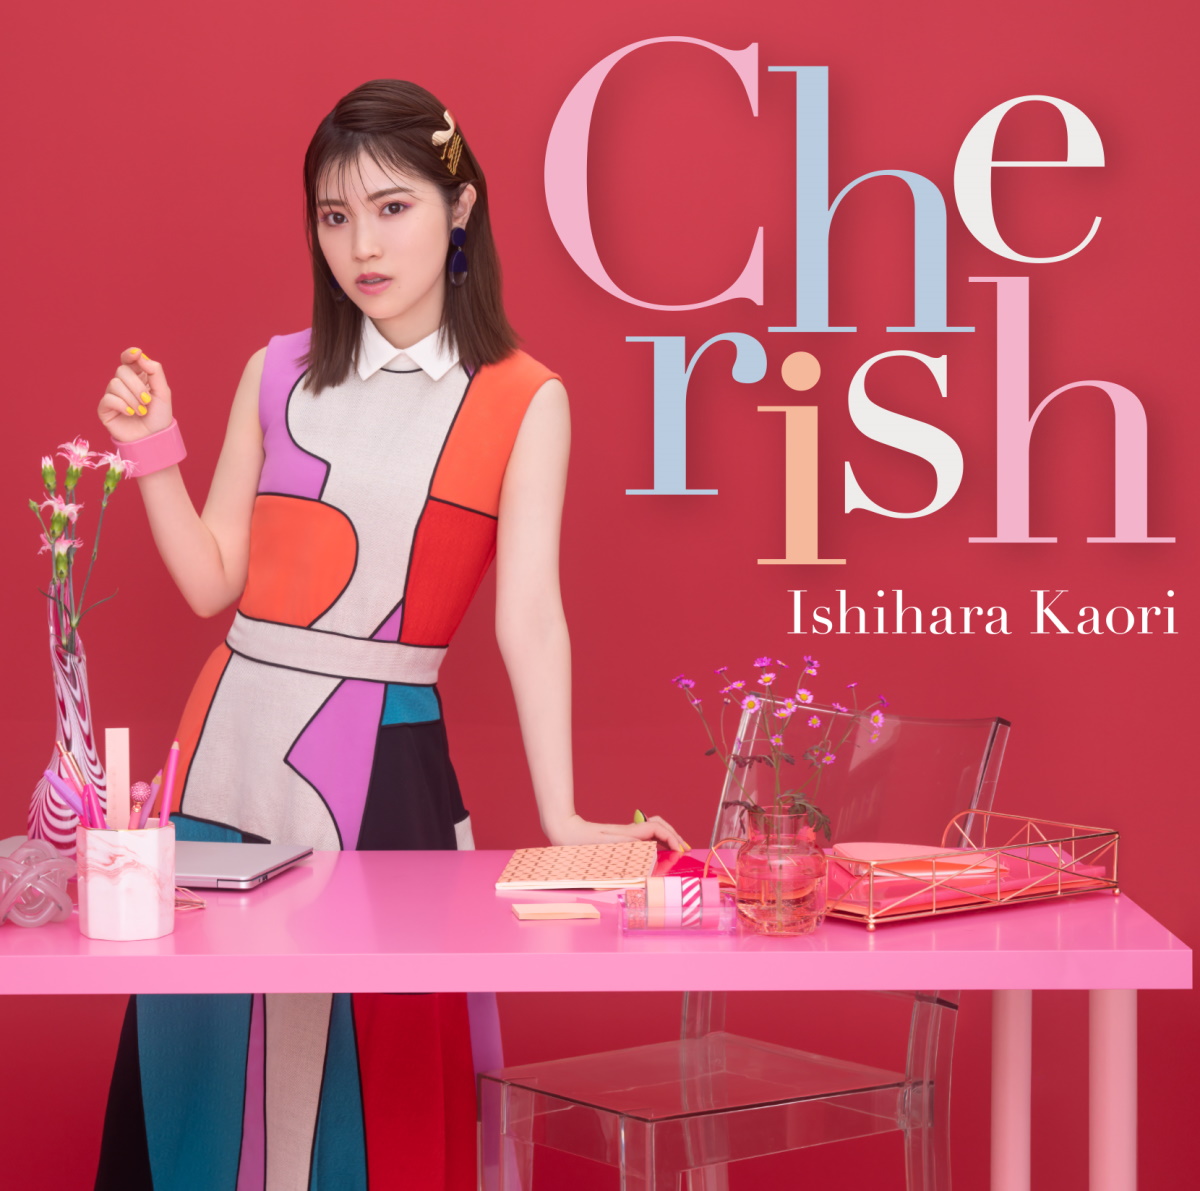 Cover art for『Kaori Ishihara - Cherish』from the release『Cherish